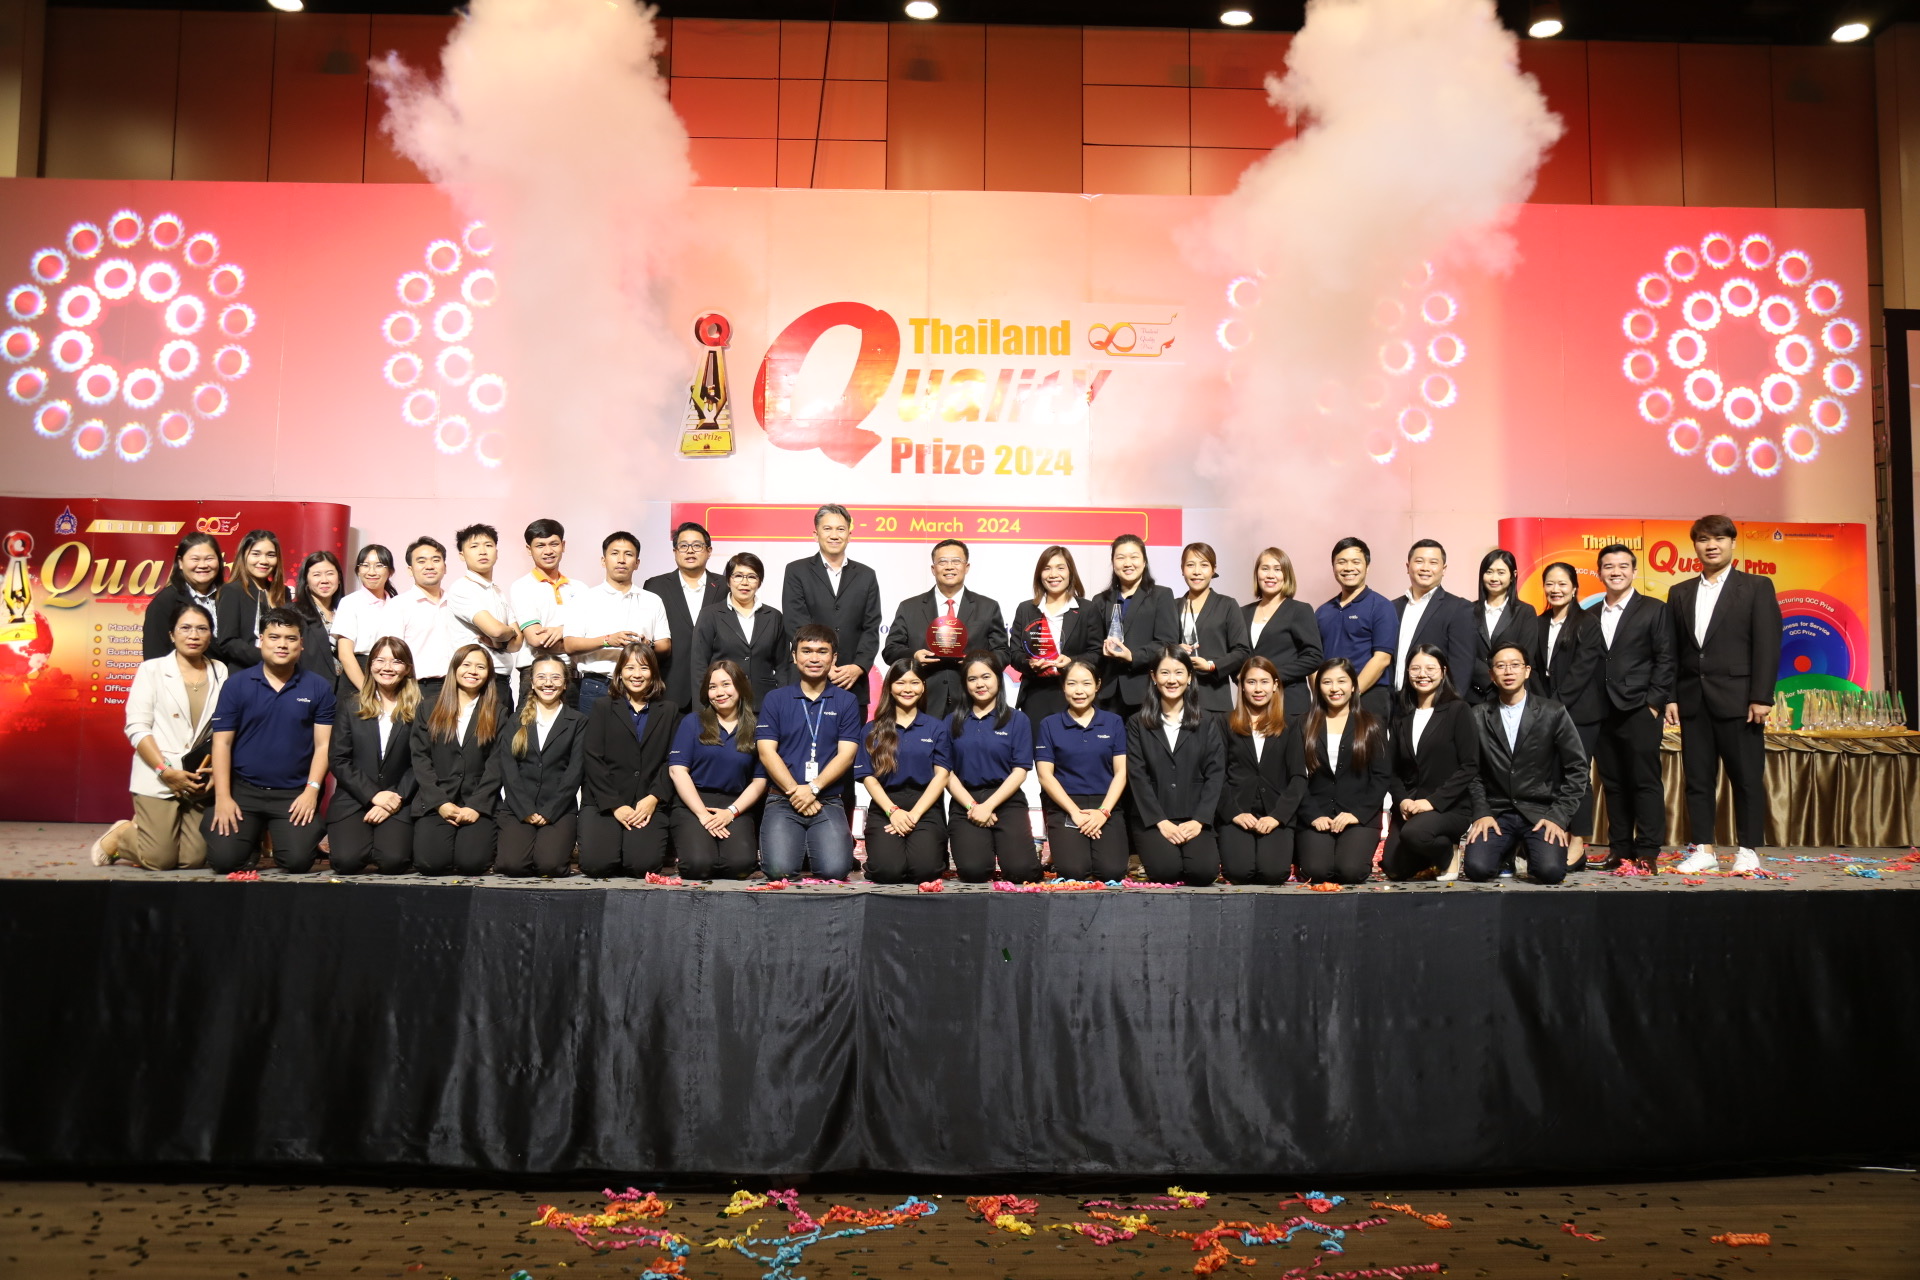 ซีพีแรม คว้ารางวัลในงาน Thailand Quality Prize 2024  การันตีองค์กรที่มีการบริหารจัดการอย่างมีประสิทธิภาพ